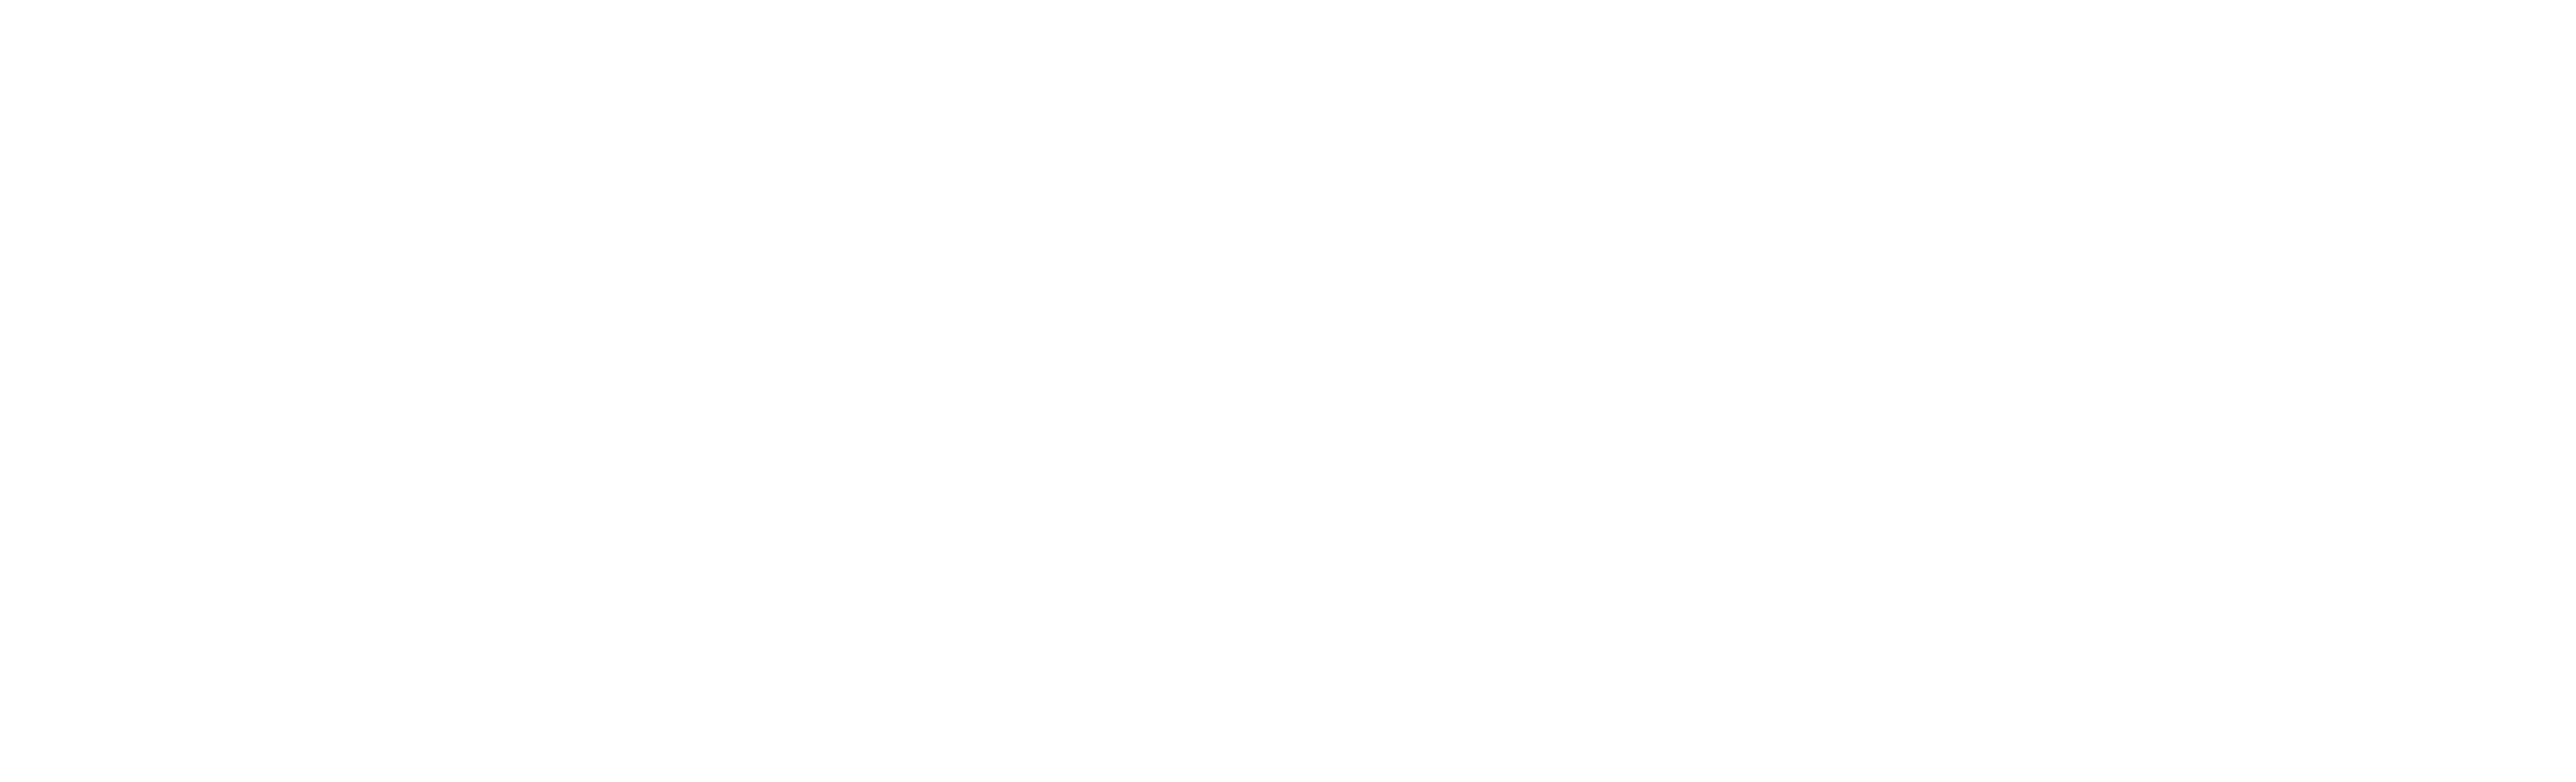 UFT - Universidad acreditada nivel avanzada por 5 años por la CNA-Chile